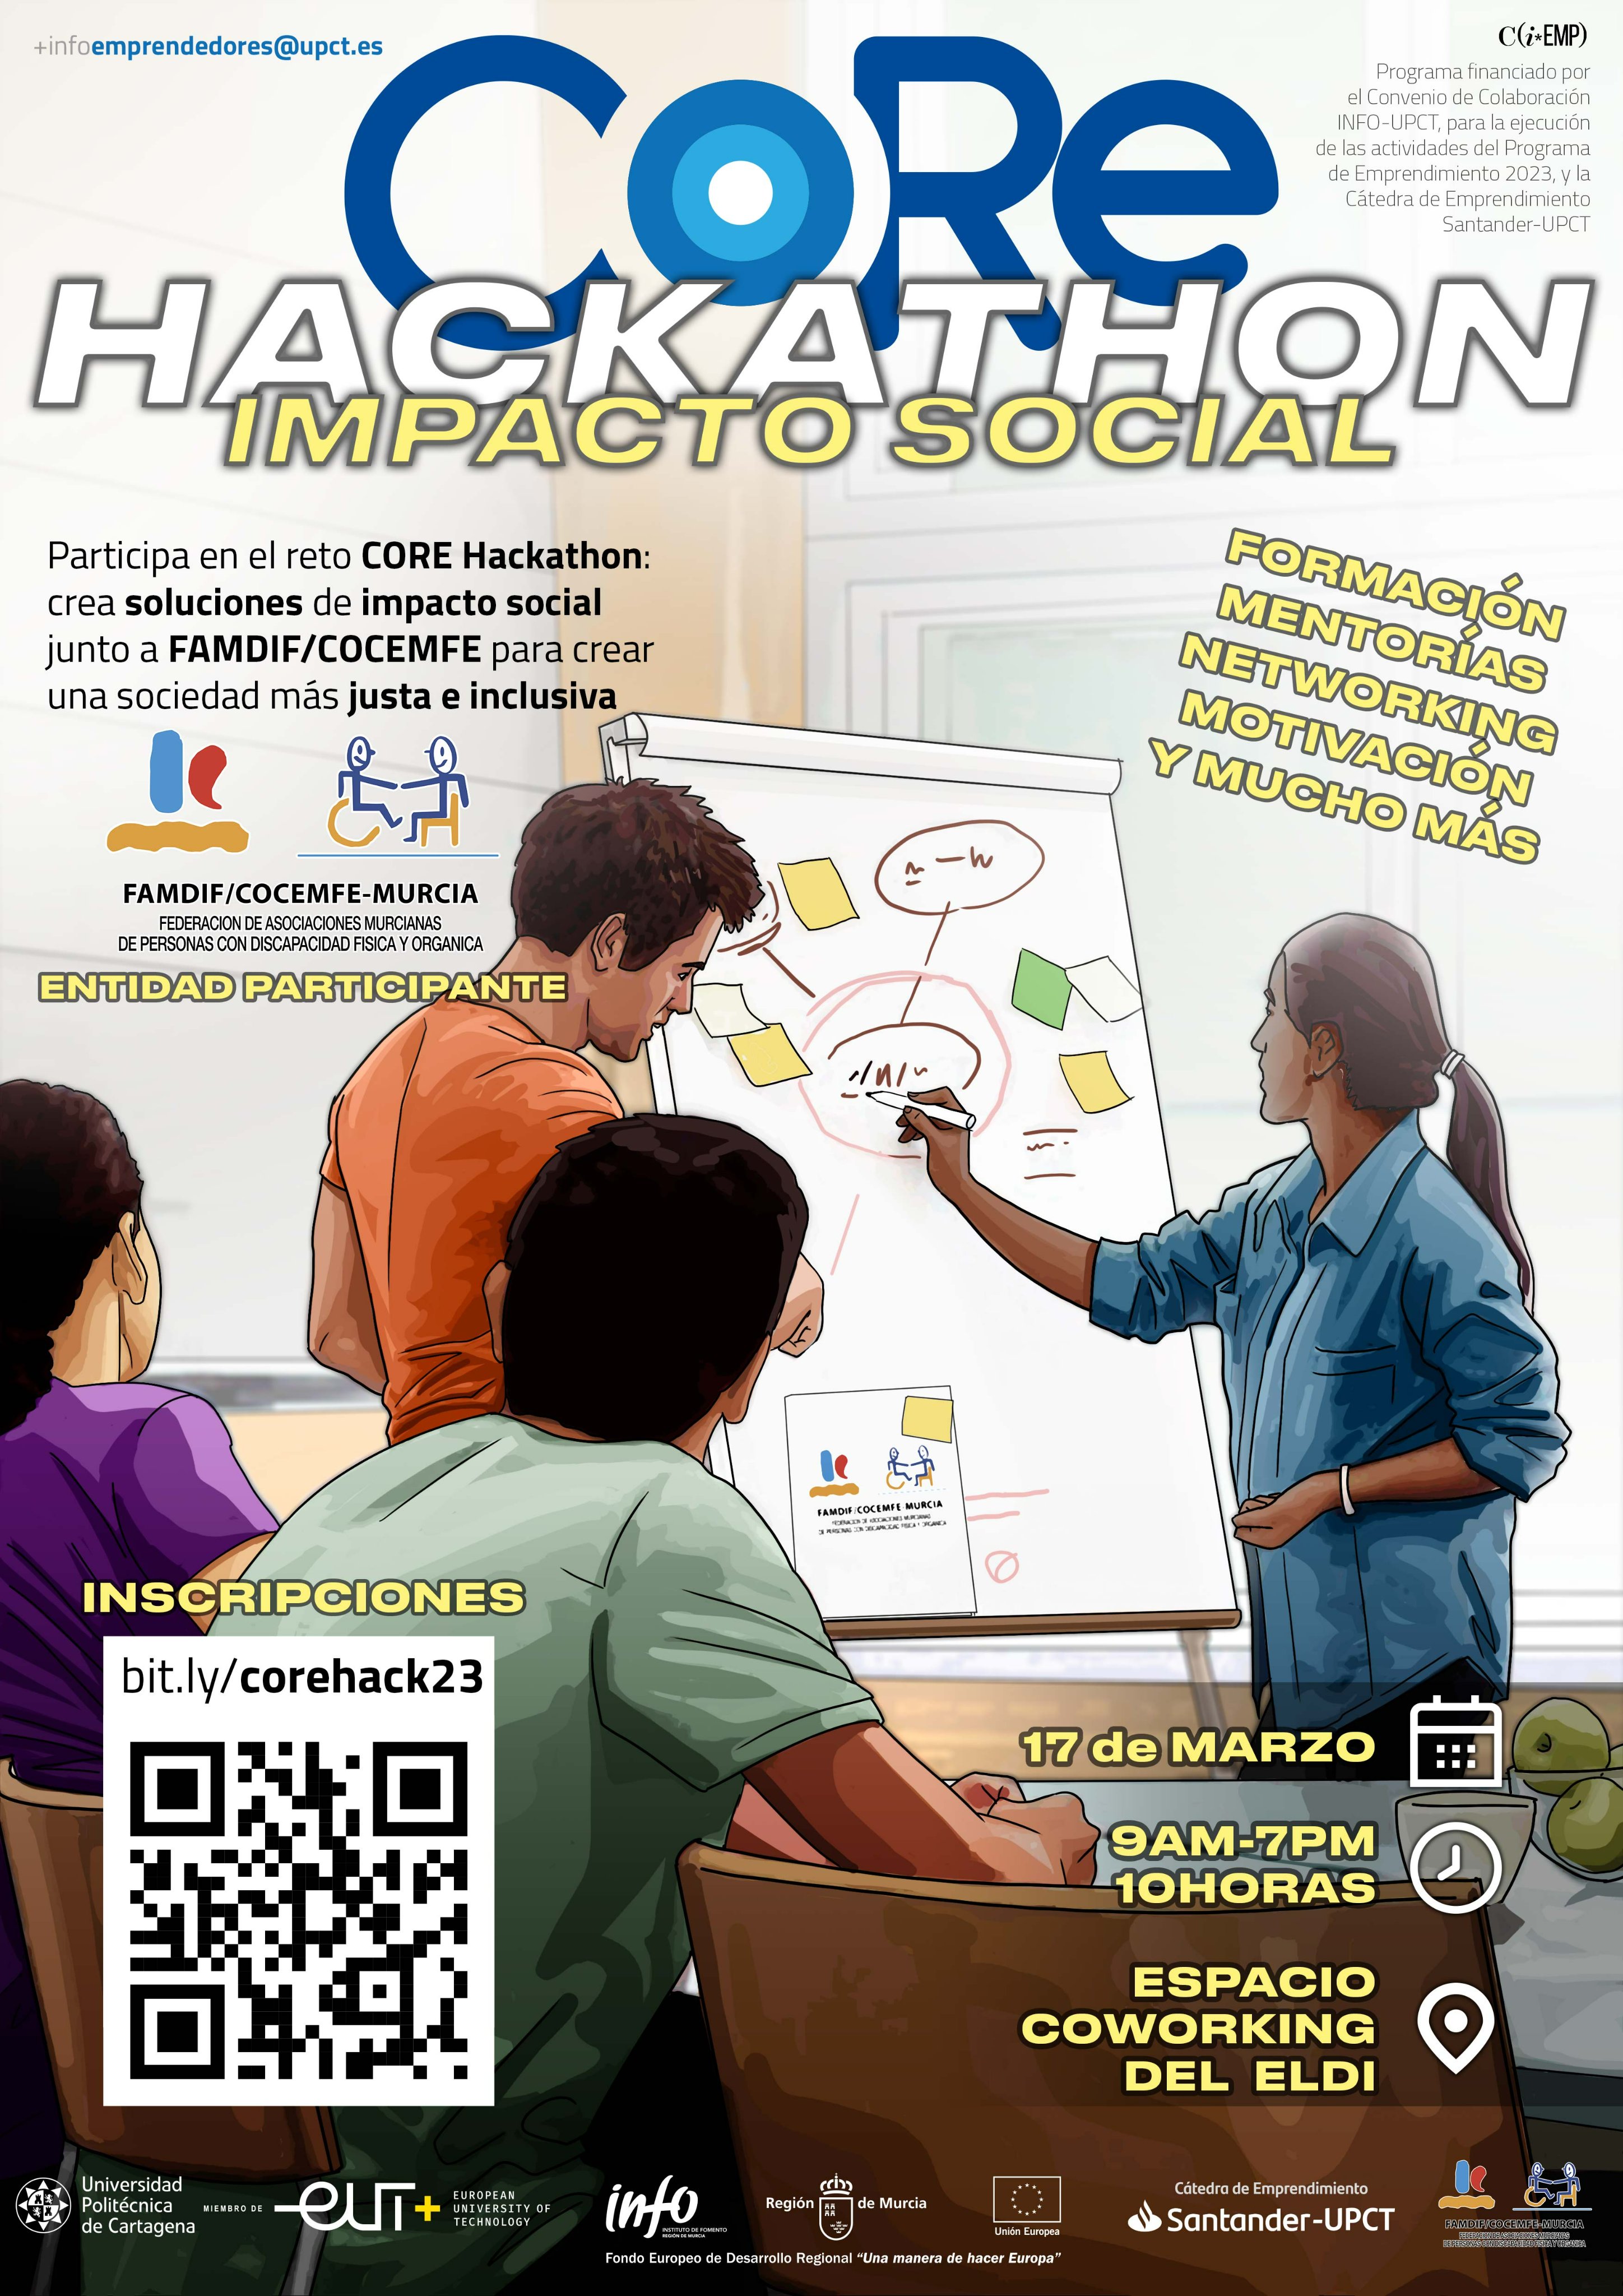 CORE Hackathon de Impacto Social del 17 de Marzo 0.5 ECTS Y REGALOS, Y MÁS